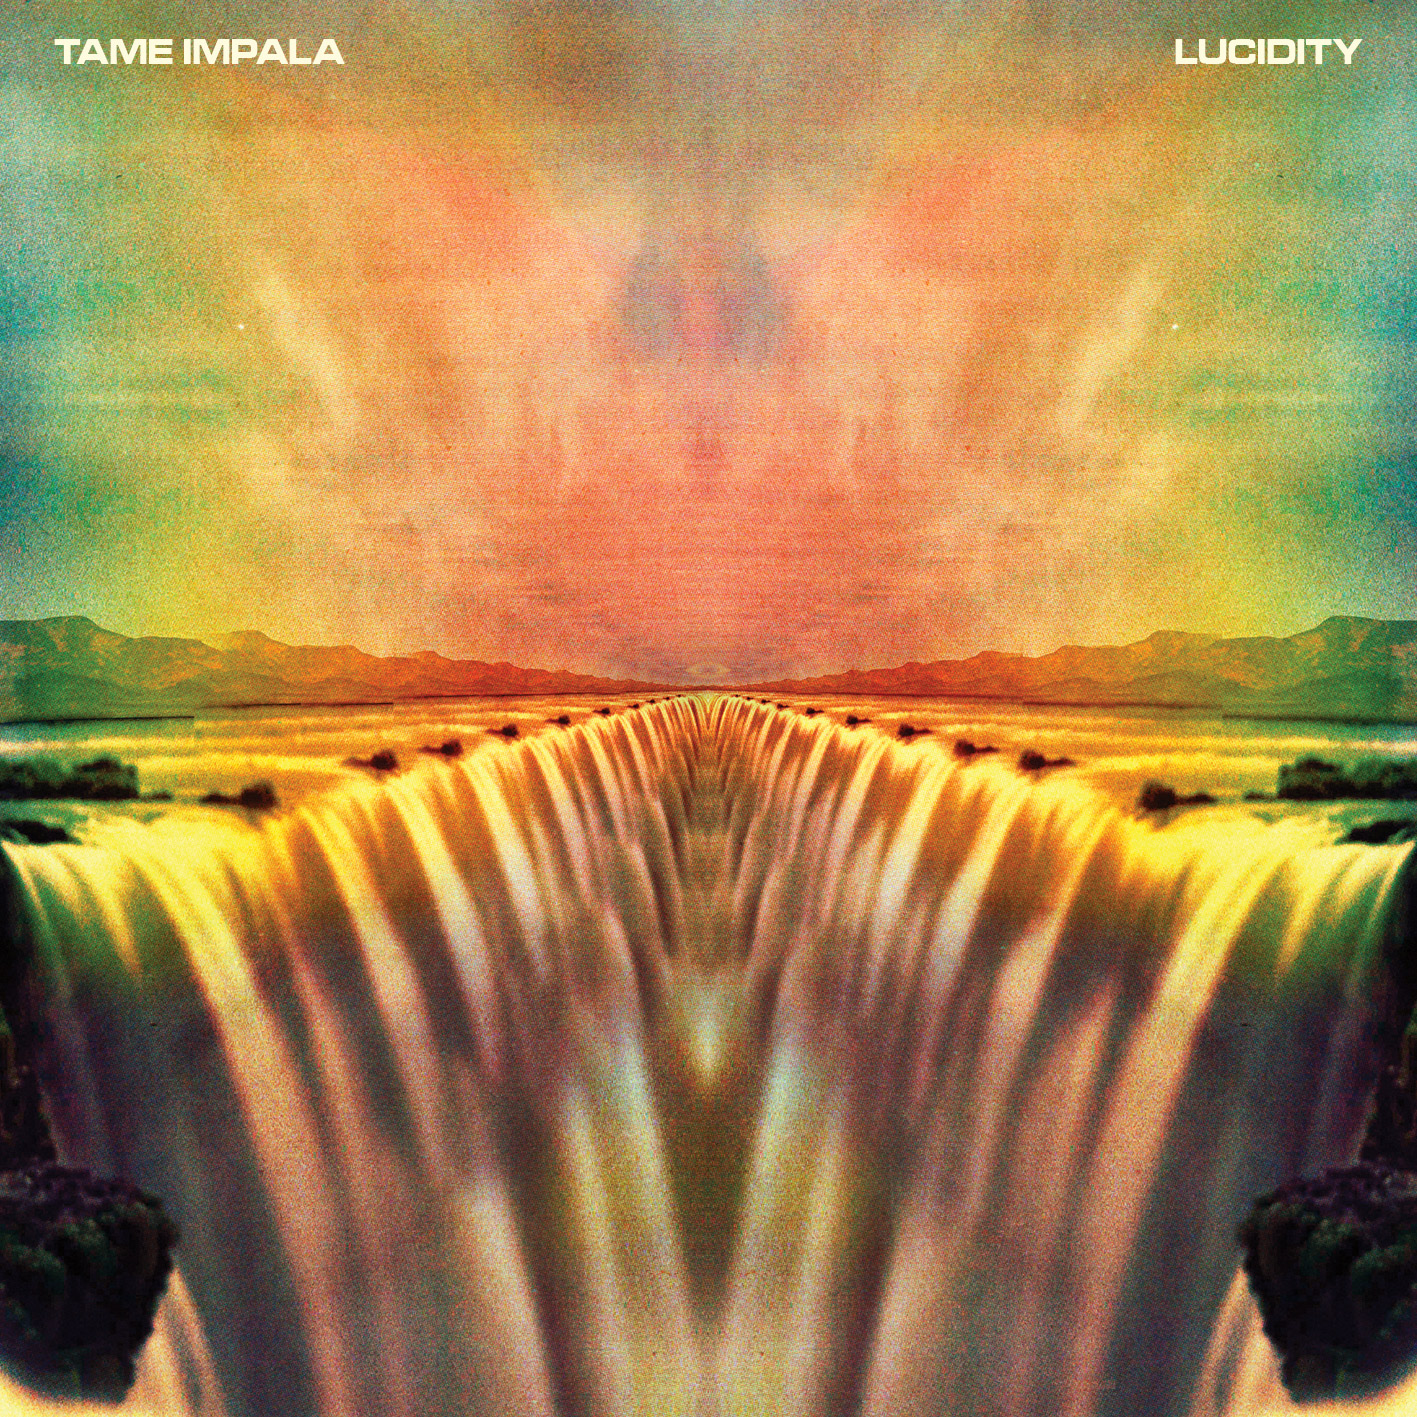 tame impala full album